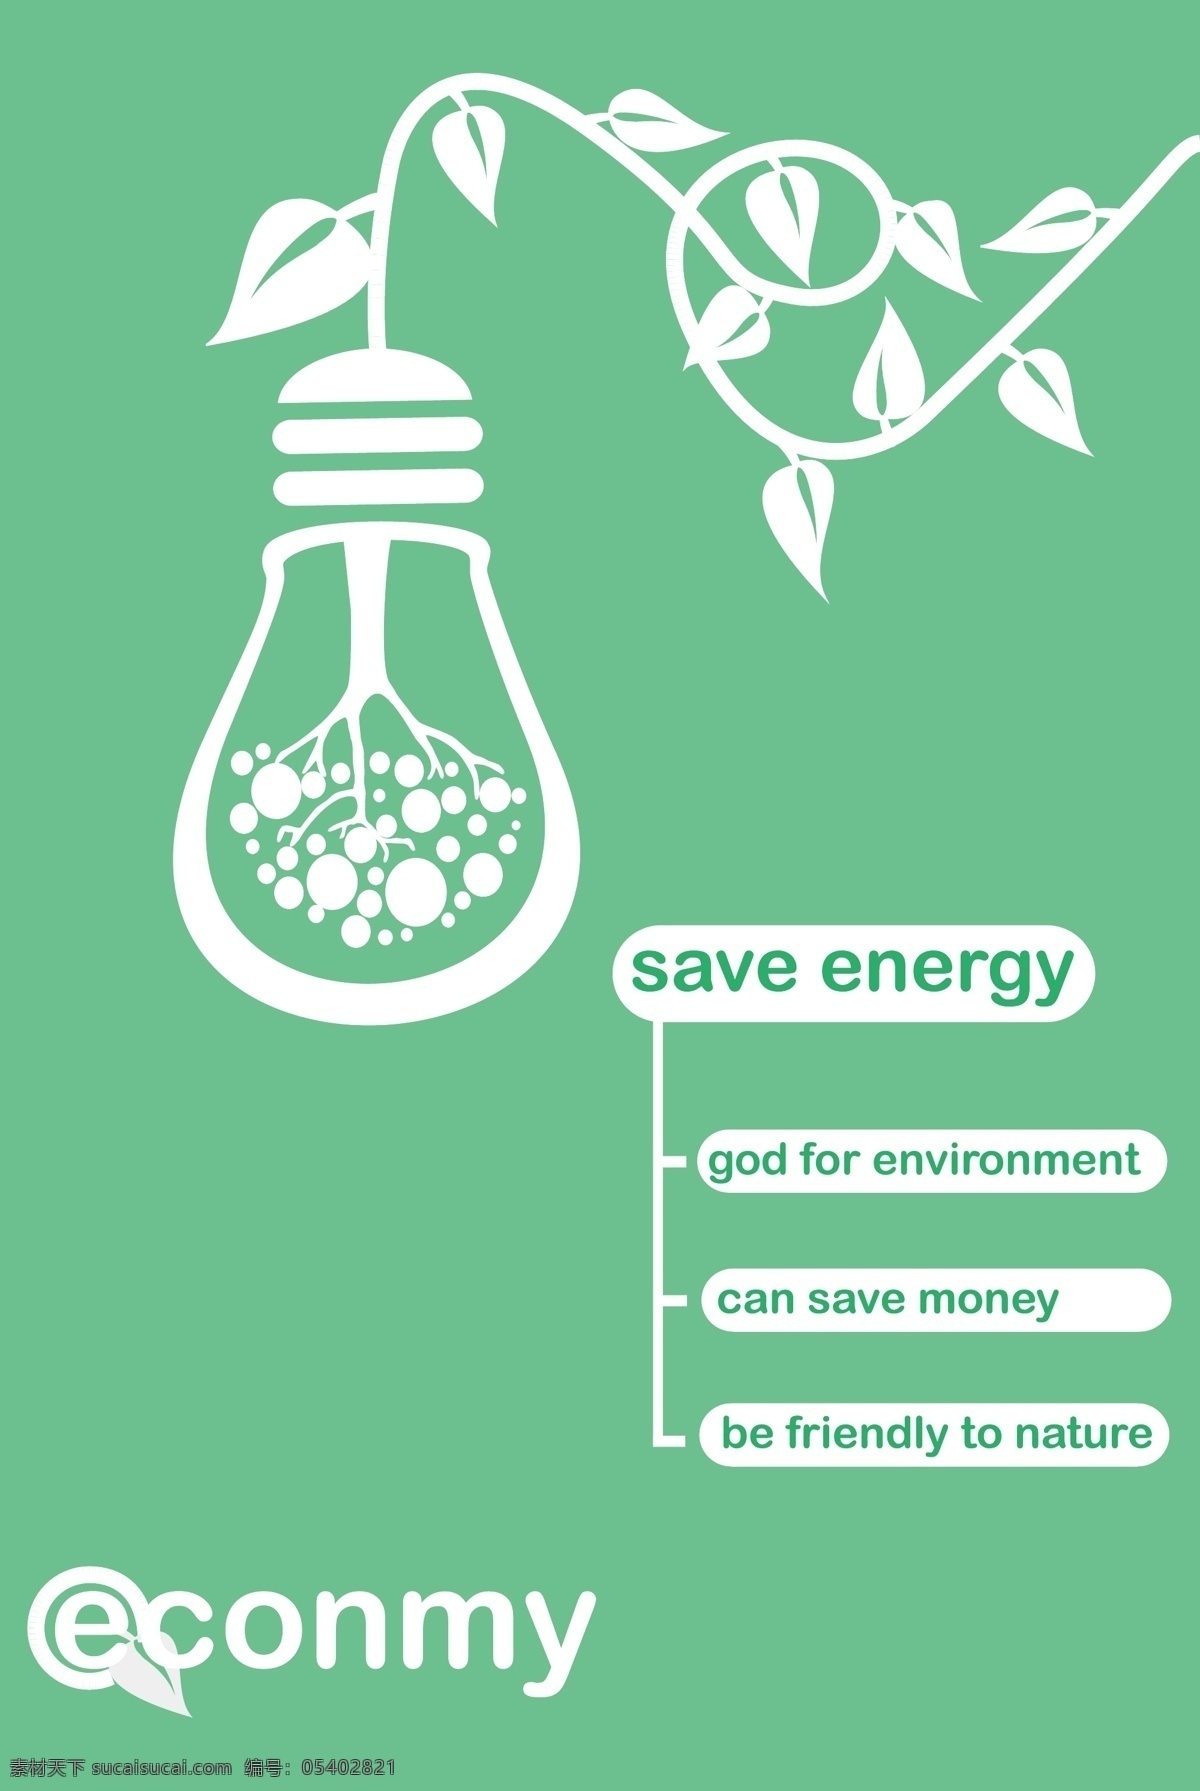 节能环保 主题 海报 节能 绿色 环保 公益 简洁 青色 天蓝色